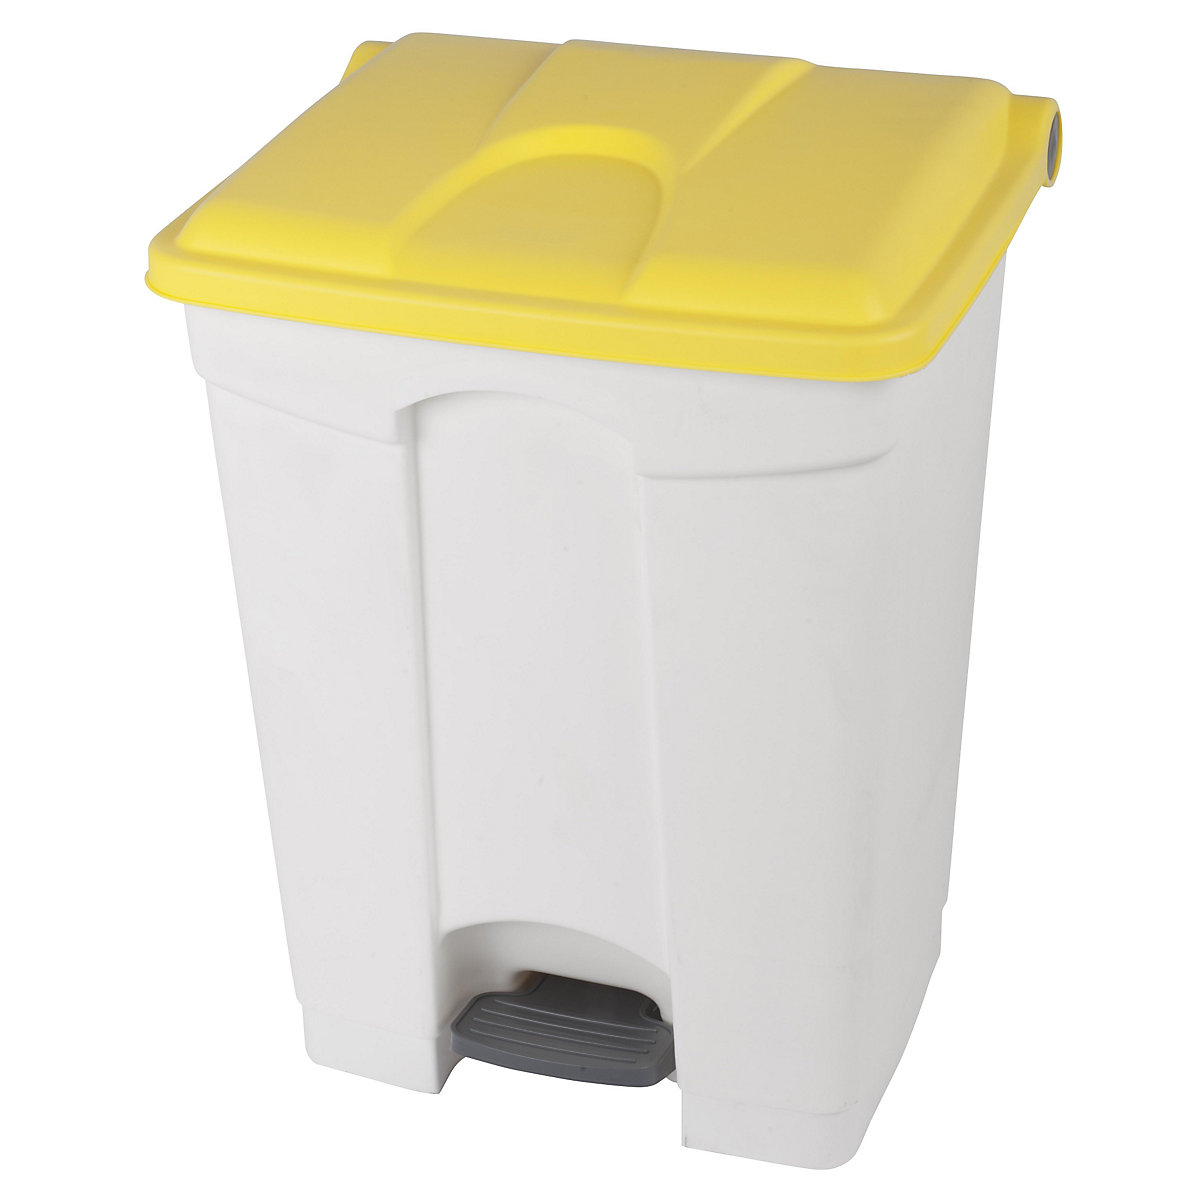 Coletor de lixo com pedal, volume 70 l, LxAxP 505 x 675 x 415 mm, branco, tampa amarela-10